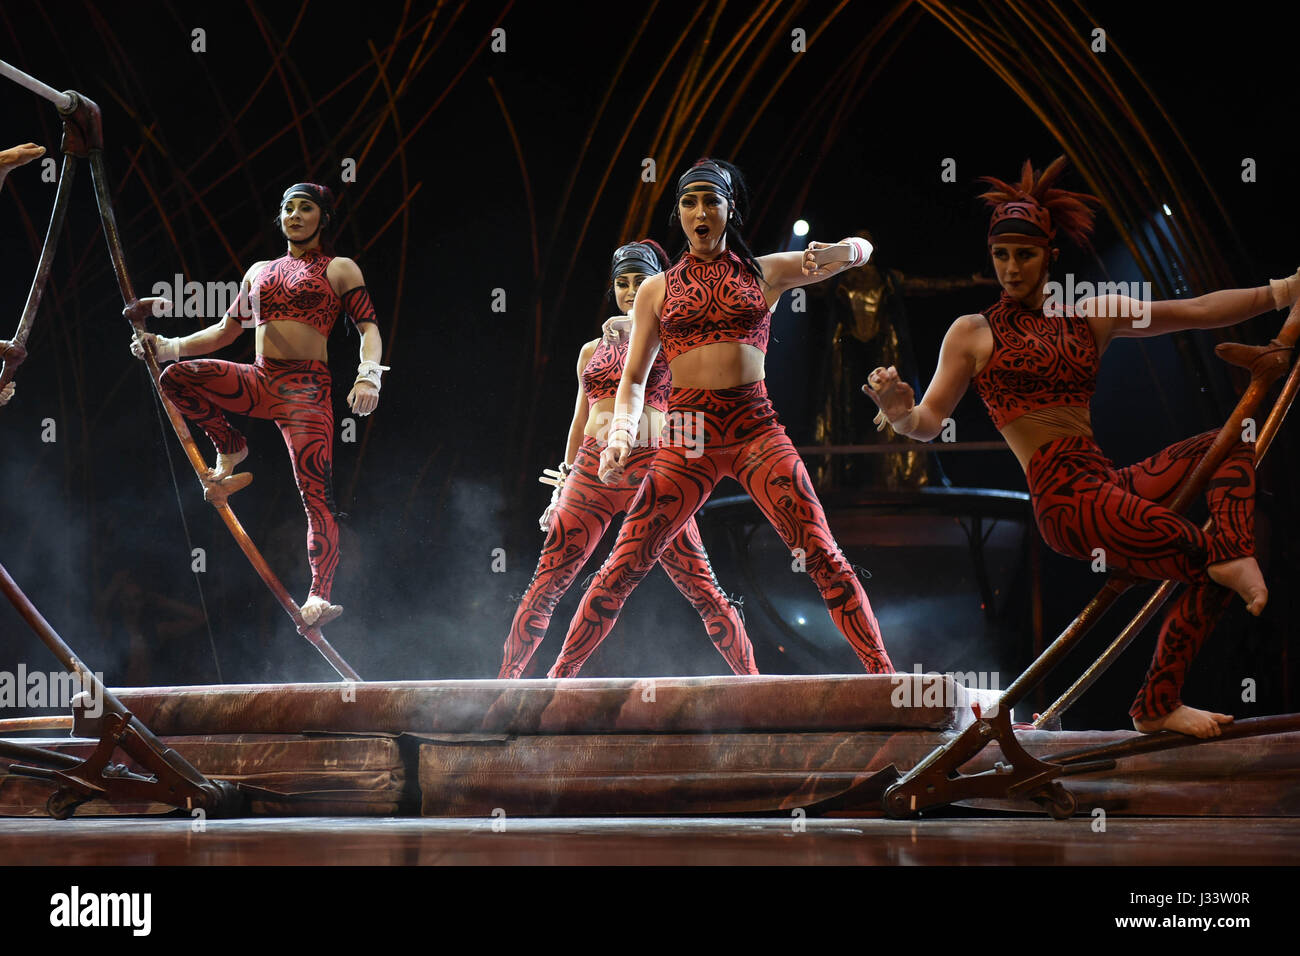 Der Cirque du Soleil Franchise-Unterhaltung Firma Kunststücke seine neueste Show AmaLuna basierend auf Shakespeares "Der Sturm" in Rom, Italien, 29. April 2017 Stockfoto